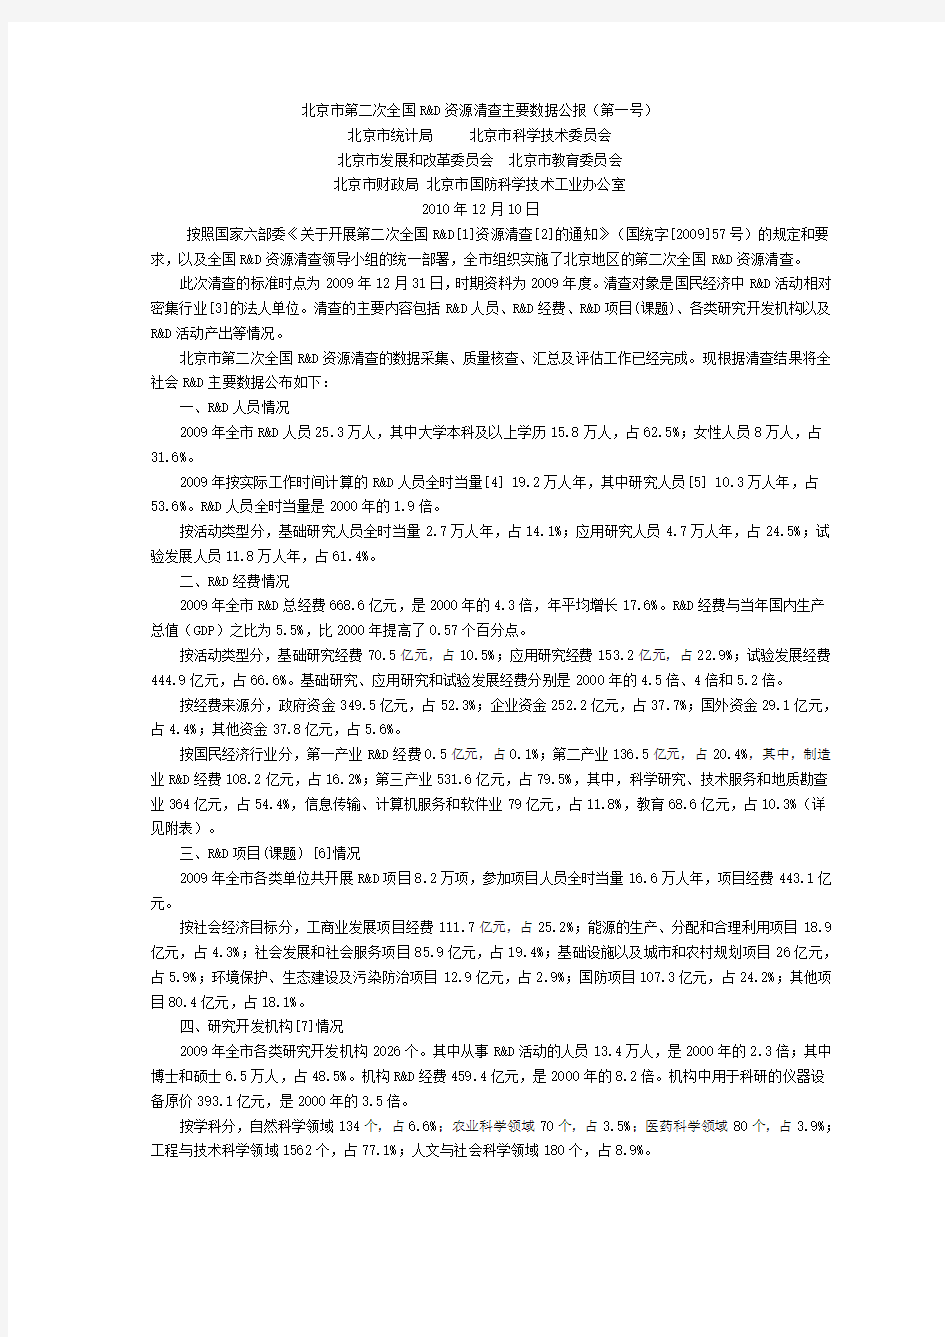 北京市第二次全国R&D资源清查主要数据公报(第一号)